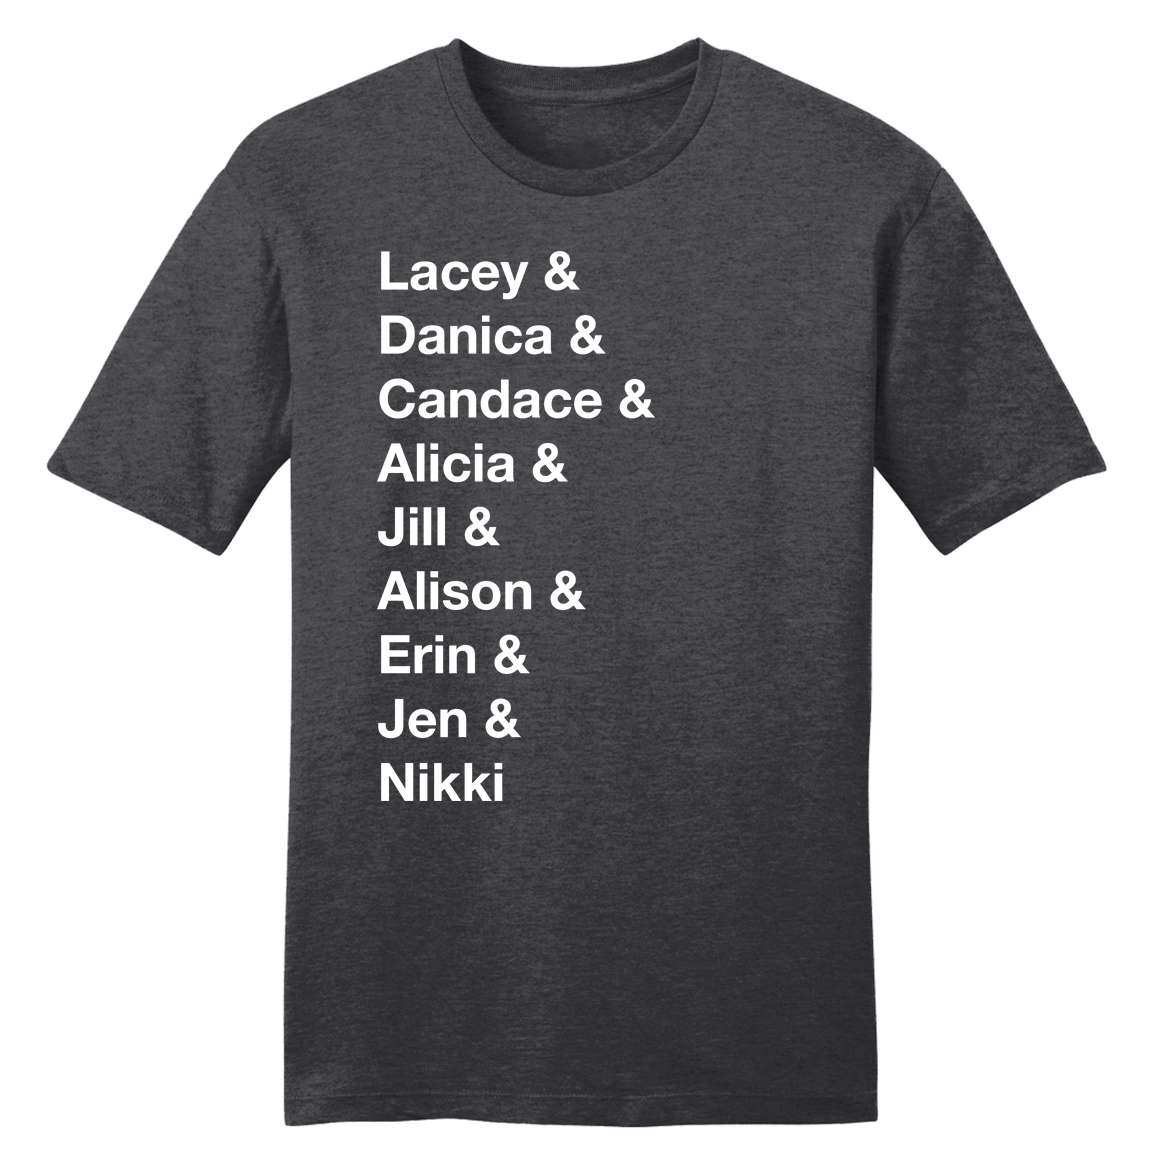 Lacey & Danica & Candace... T-shirt